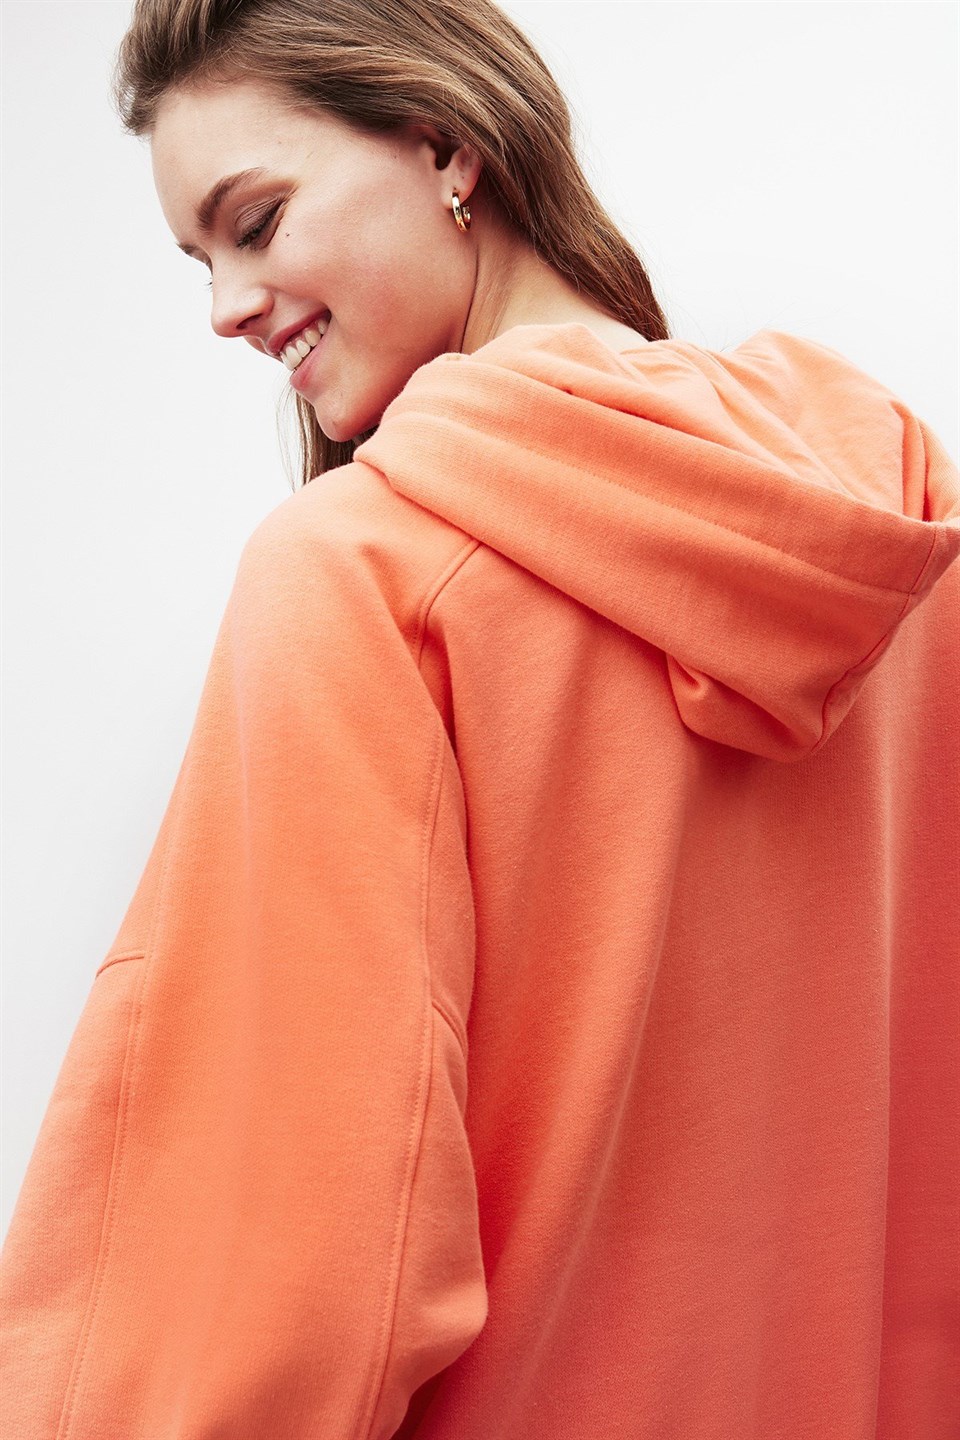 VIENNA Kadın Nar Çiçeği Düz Renk Kapüşonlu Ekstra Oversize Sweatshirt